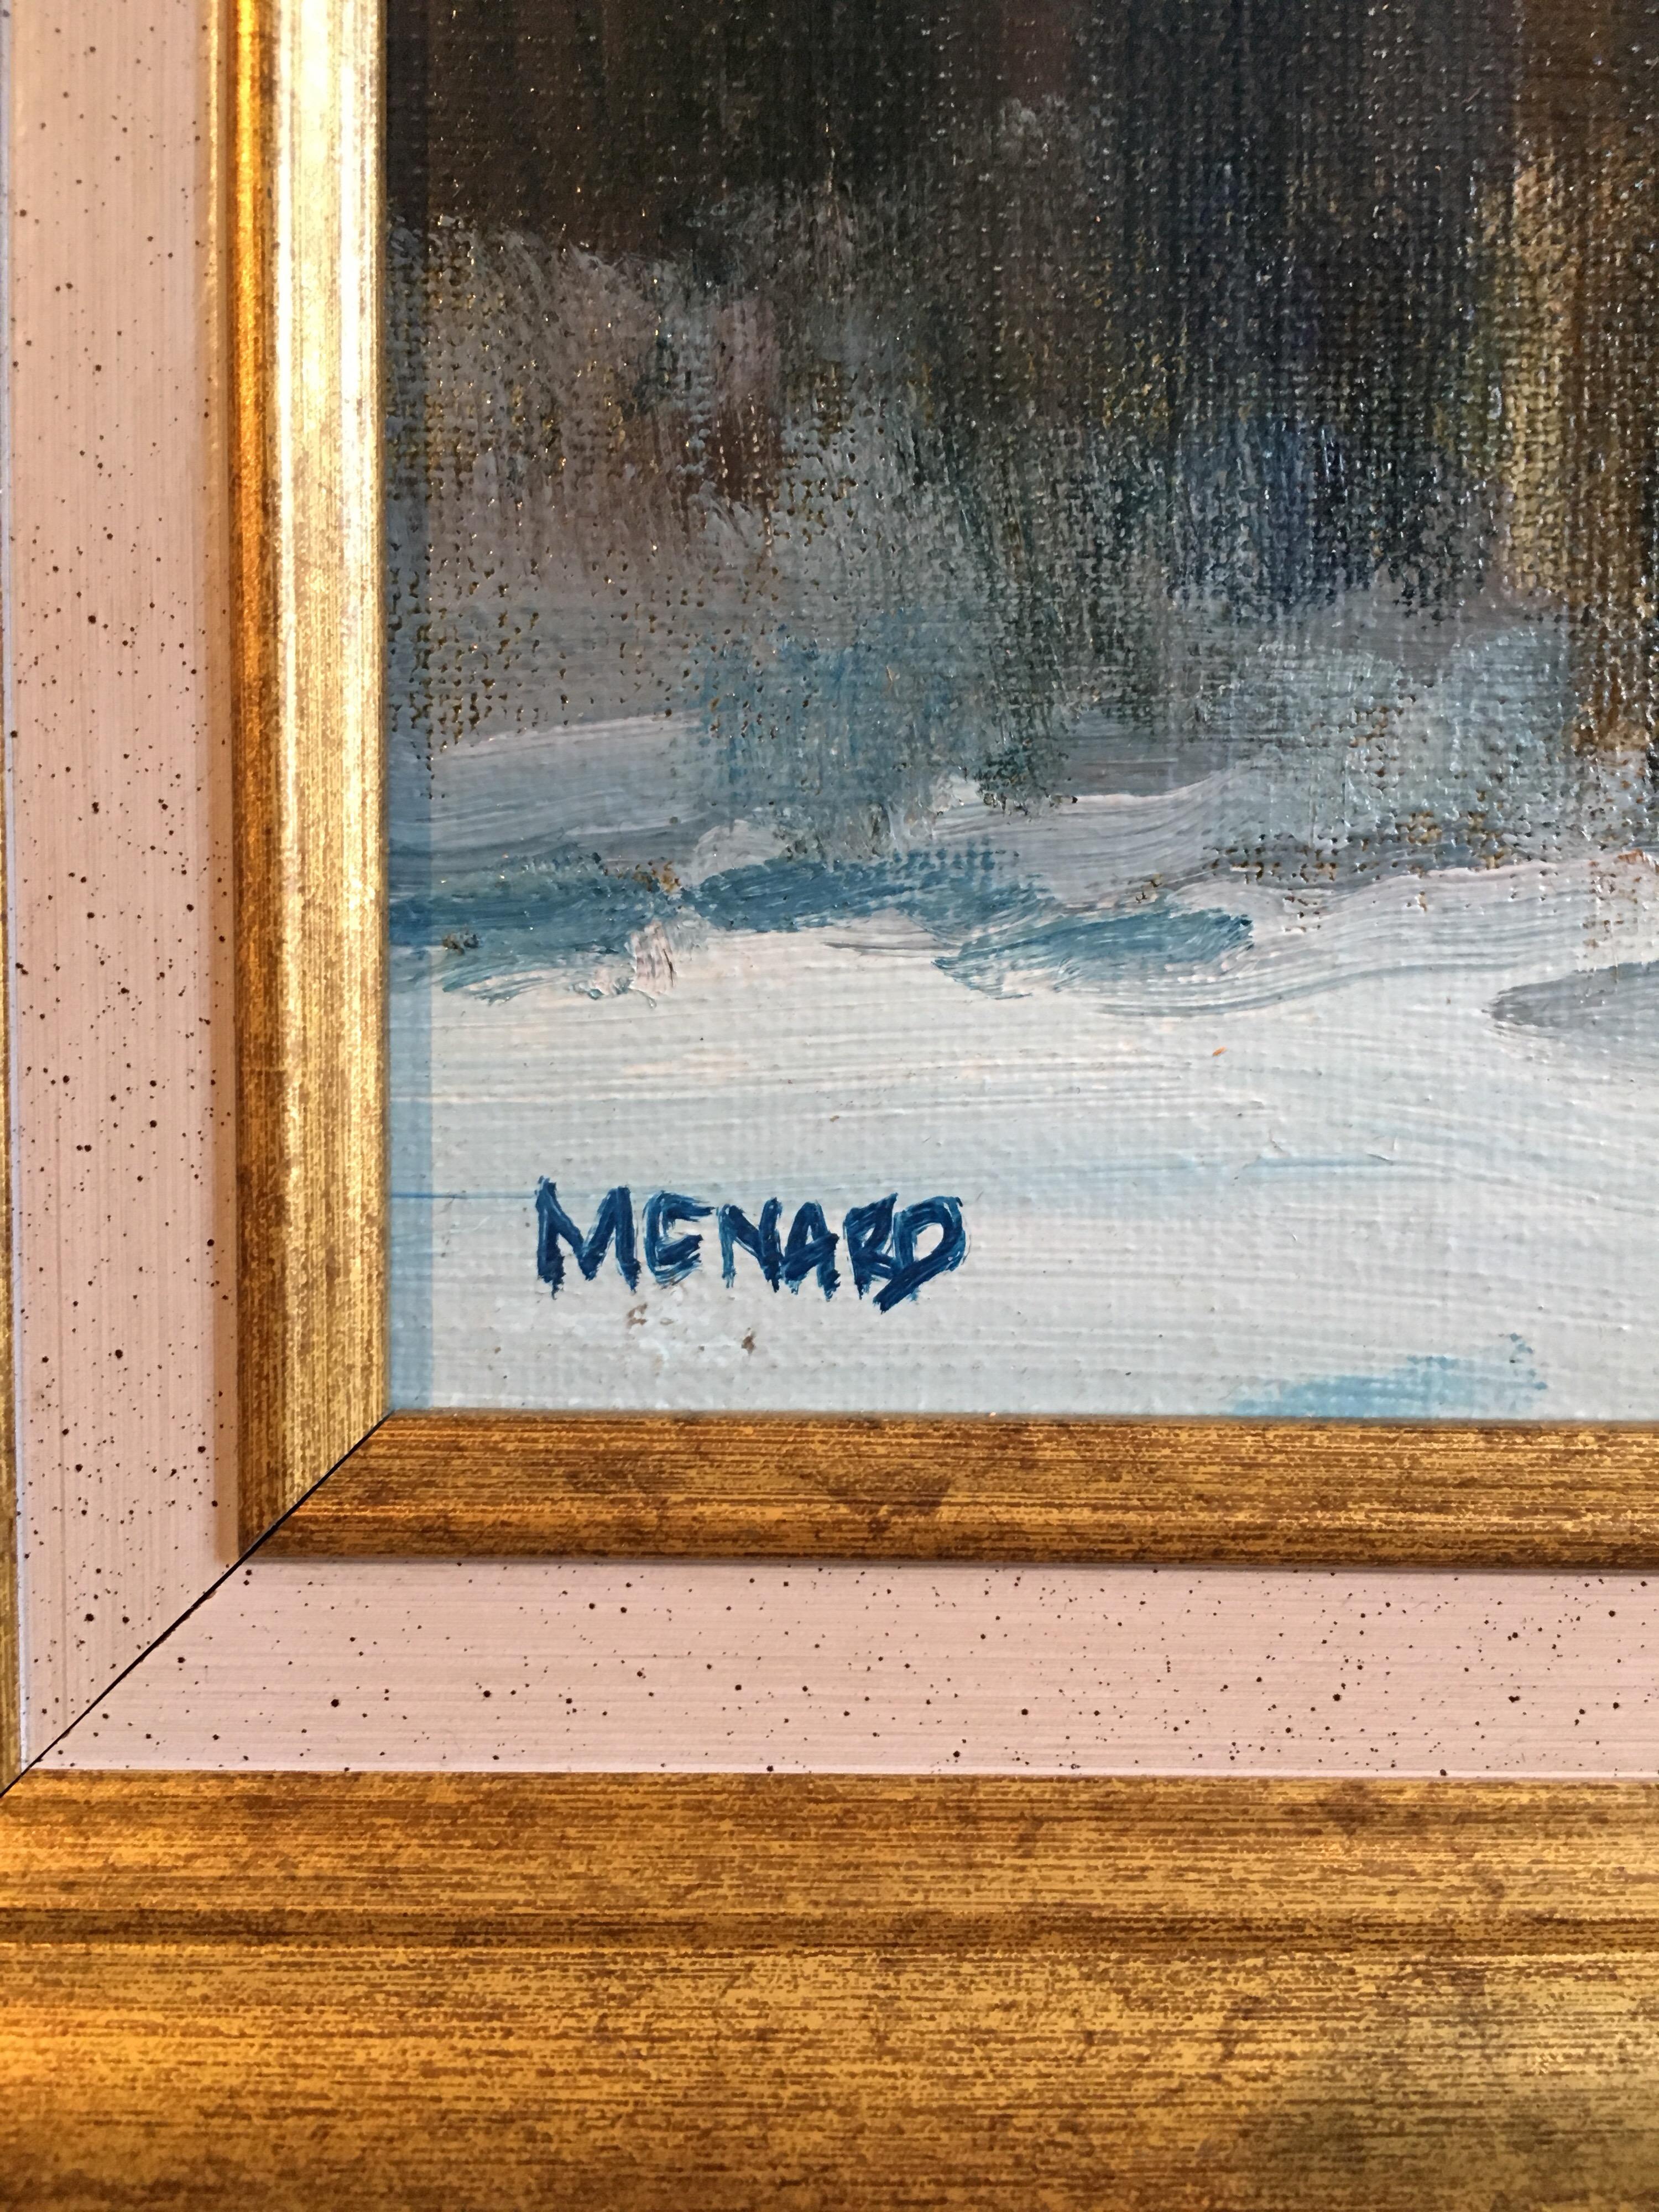 Reflection on the Water, paysage impressionniste français, peinture à l'huile, signée - Painting de Claude Menard